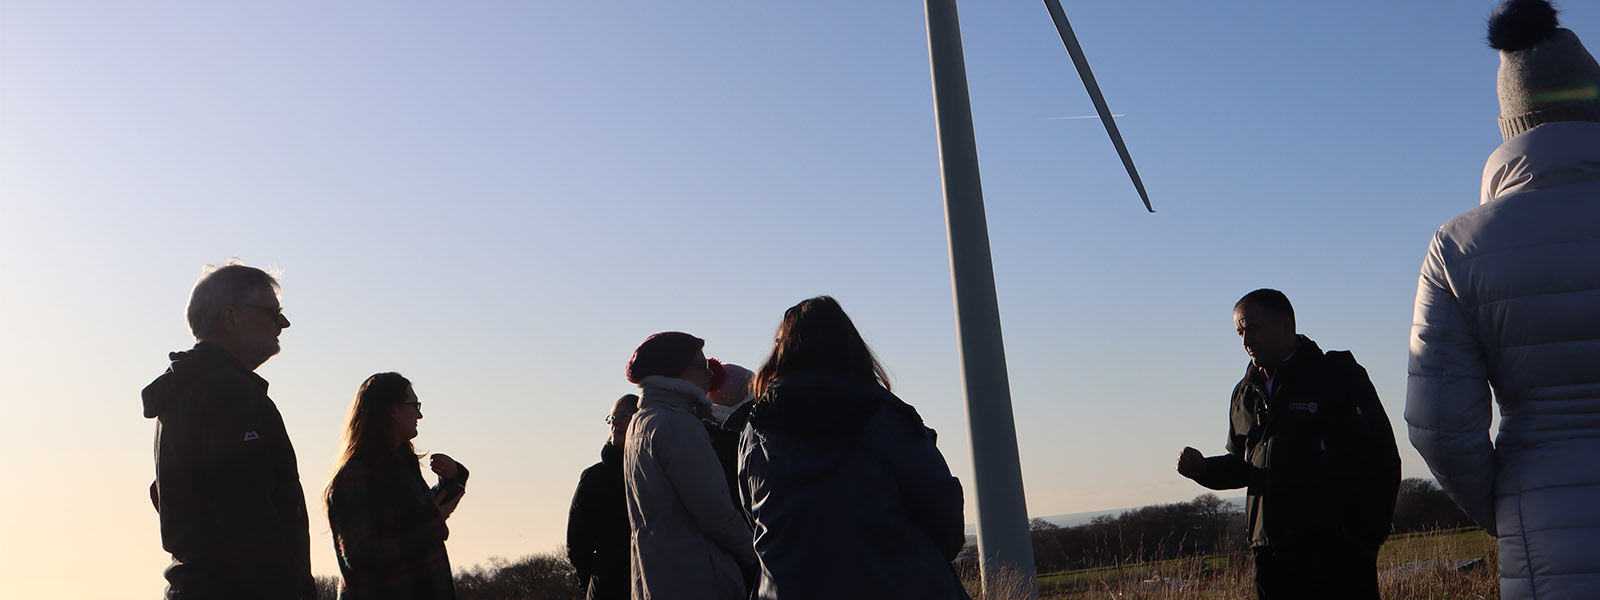 山ּ's wind turbine with people attending a talk on sustainability.